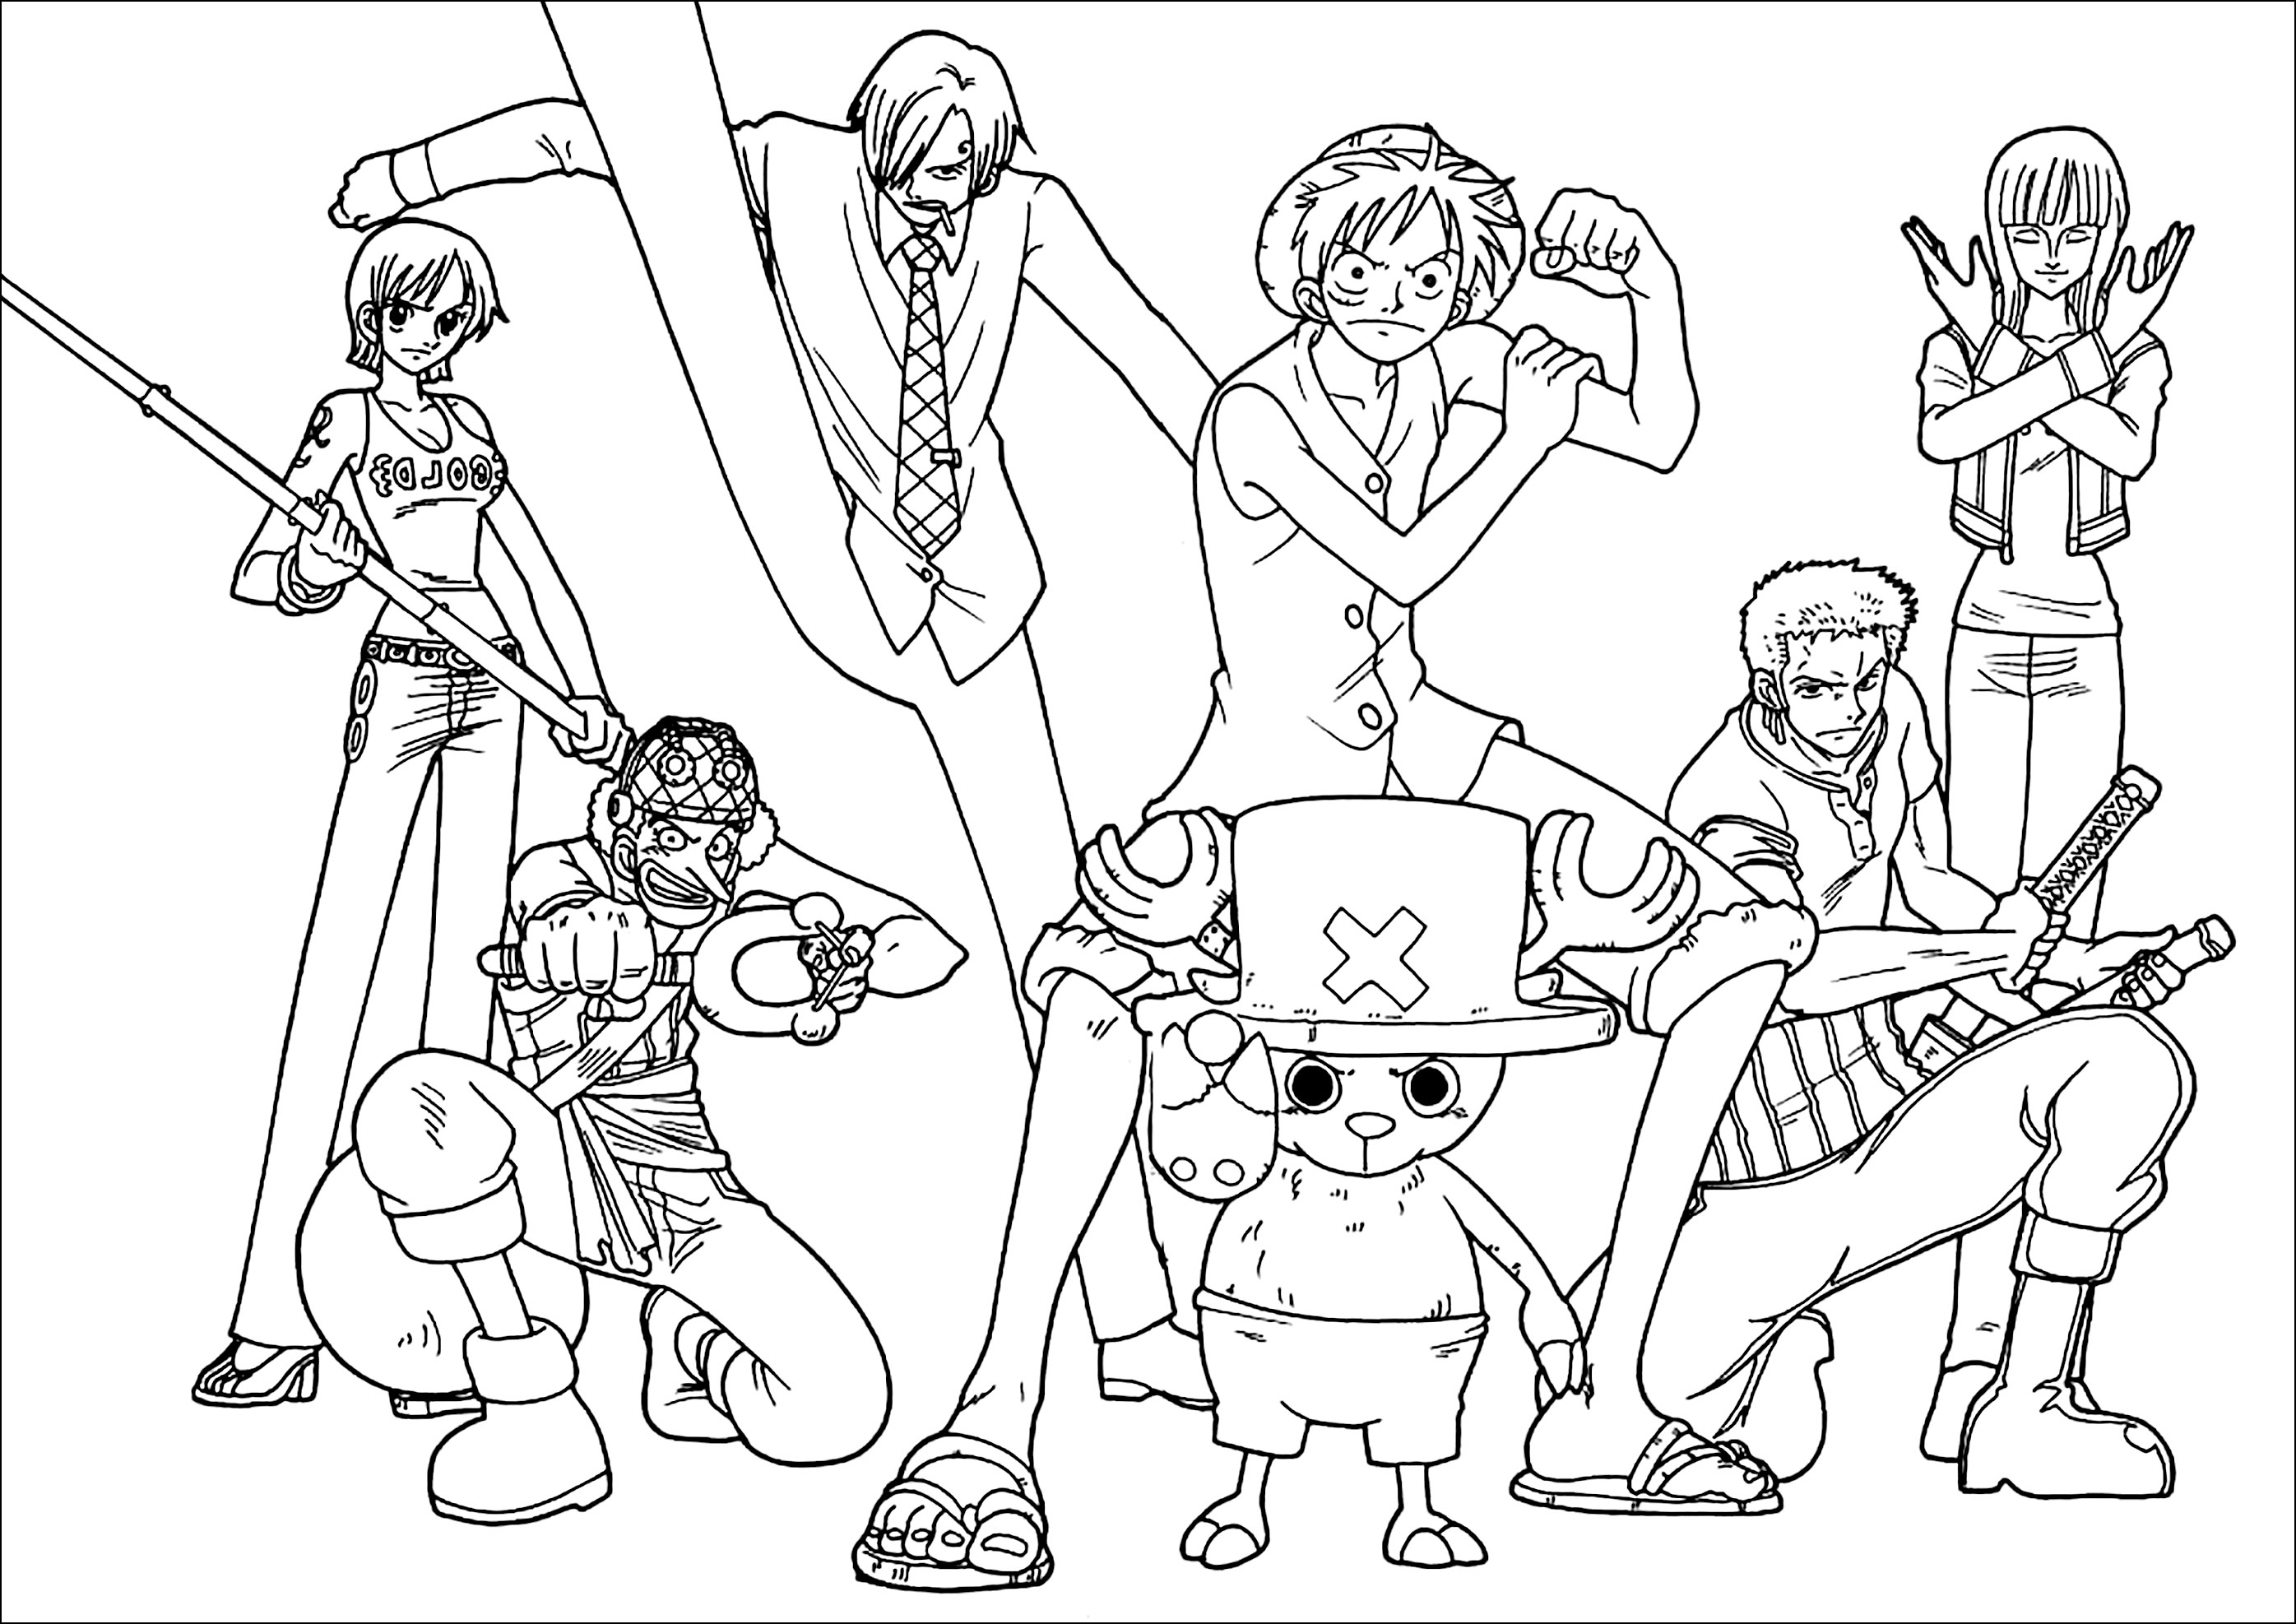 Todos los personajes de One Piece